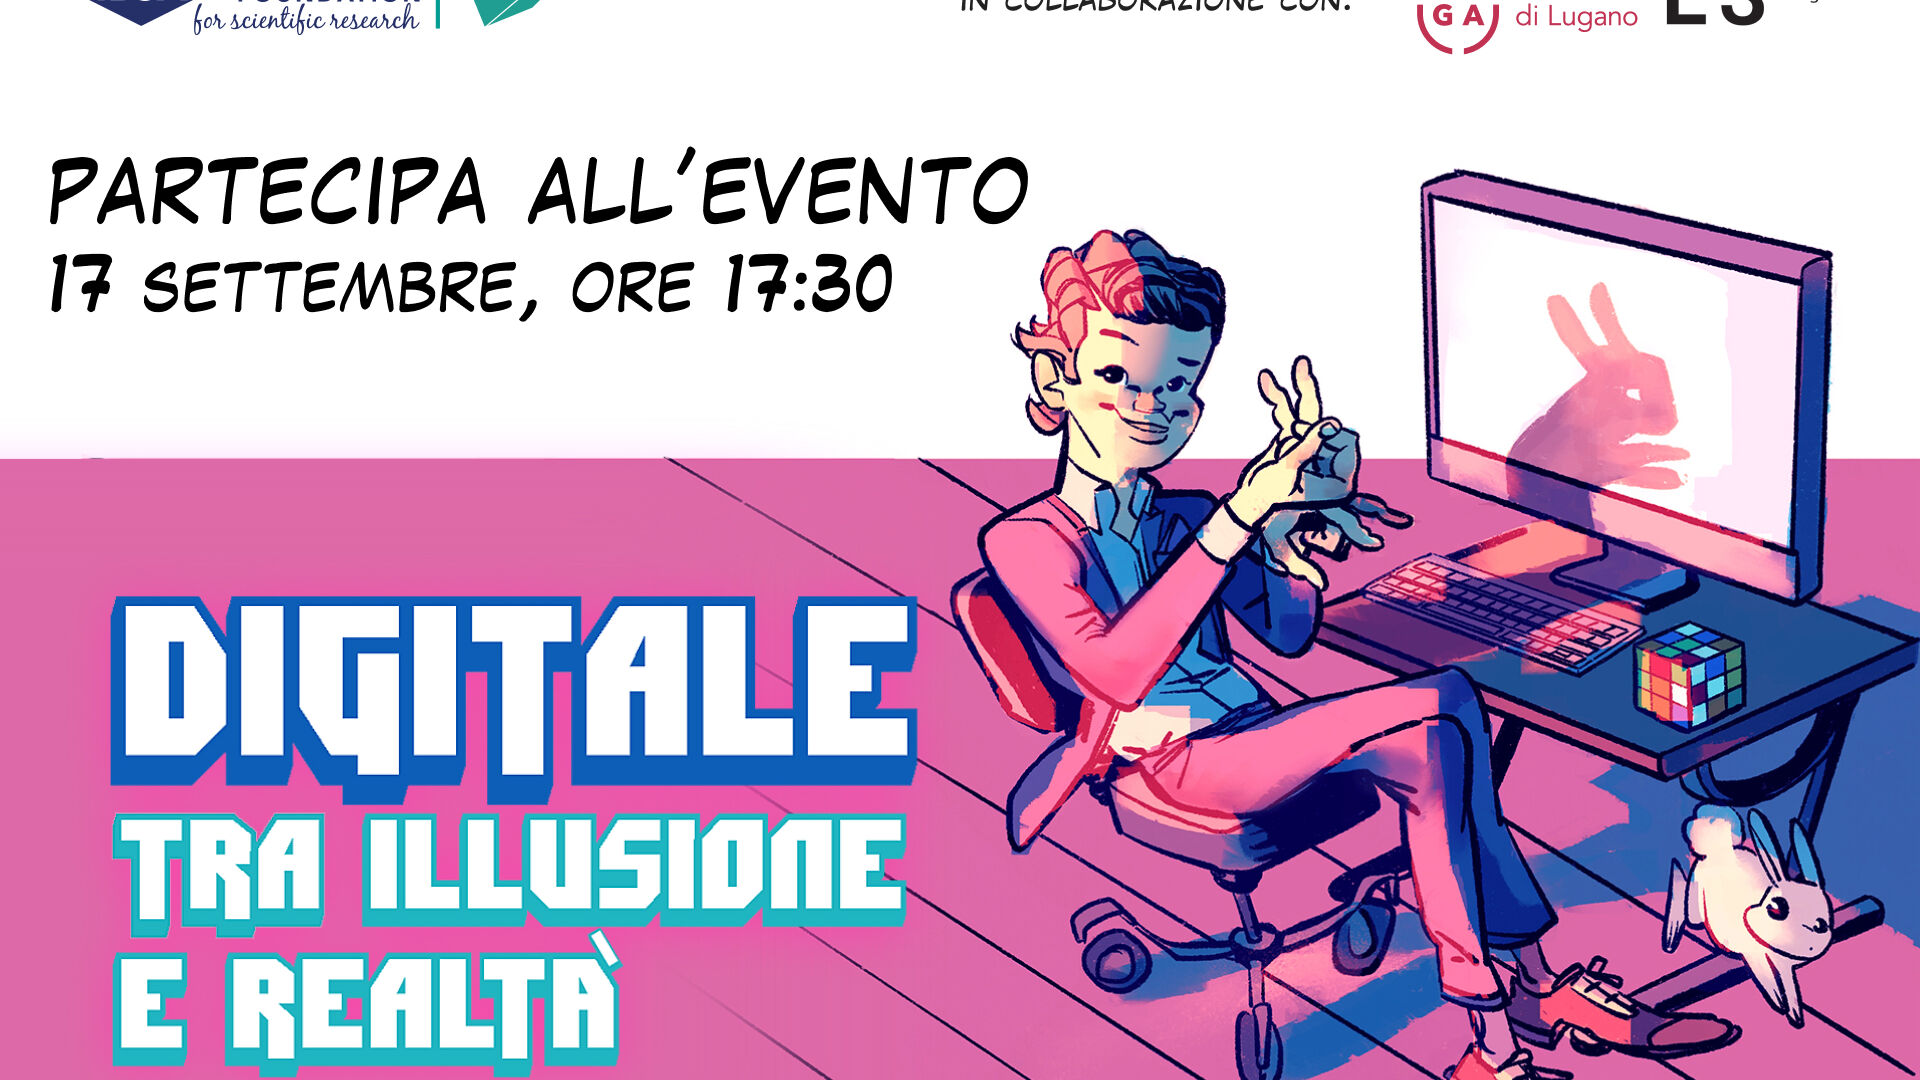 Il banner dell'evento “Digitale tra illusione e realtà” di Lugano del 17 settembre 2022